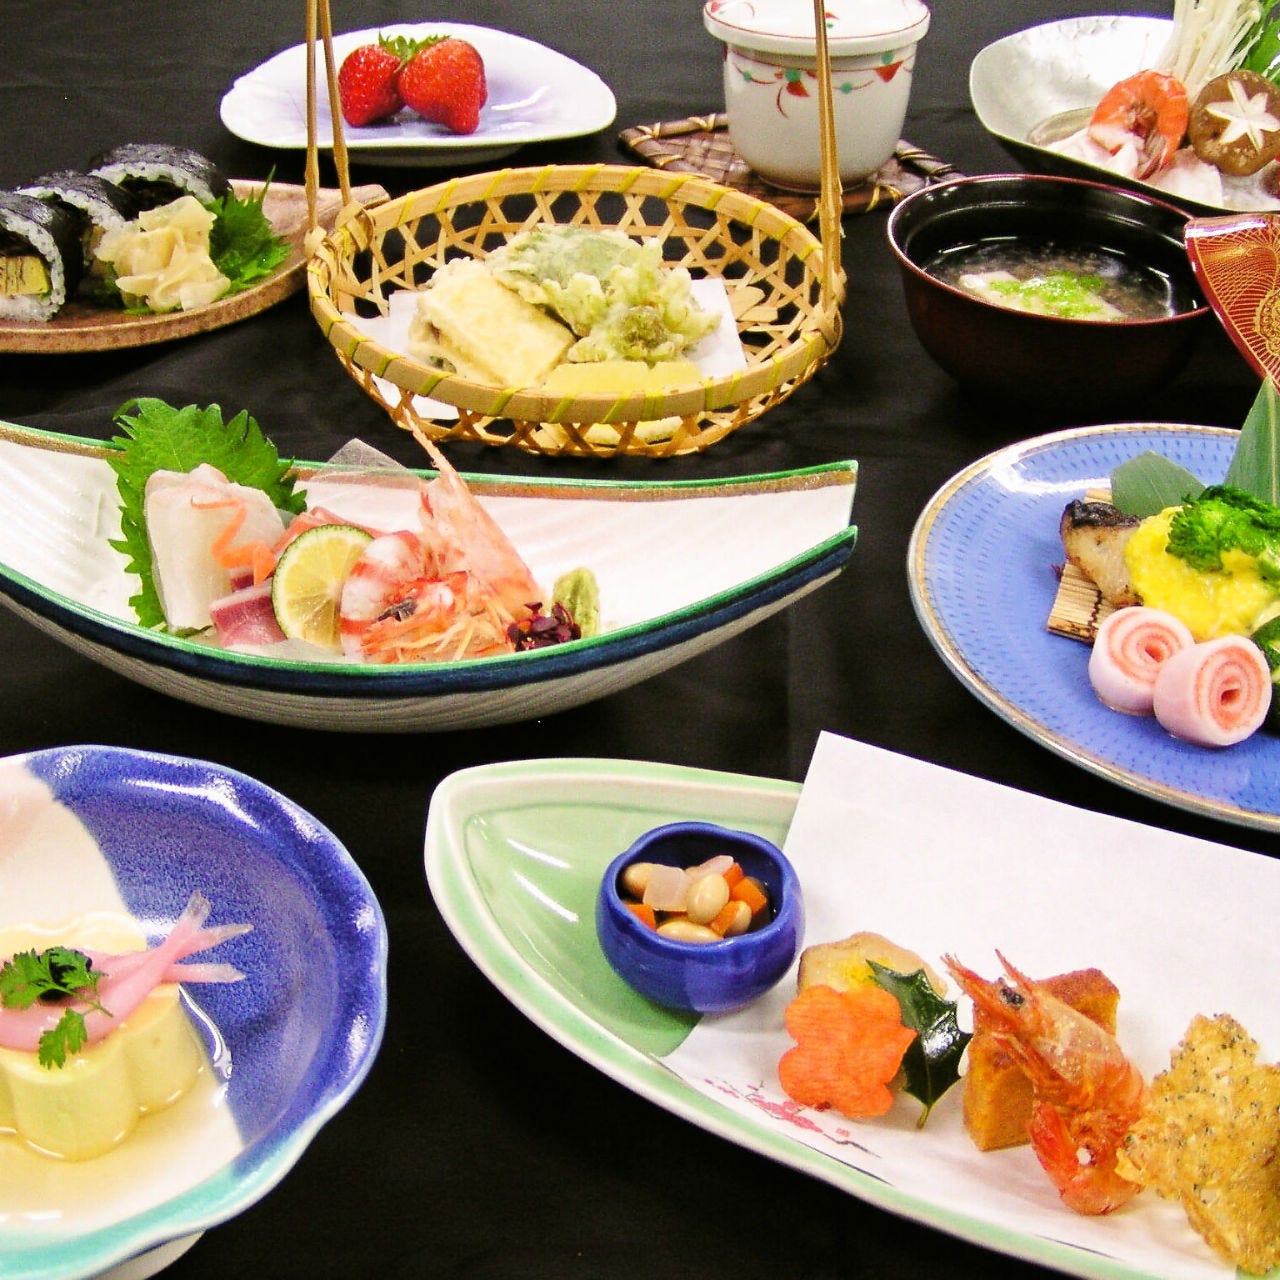 伝統日本料理